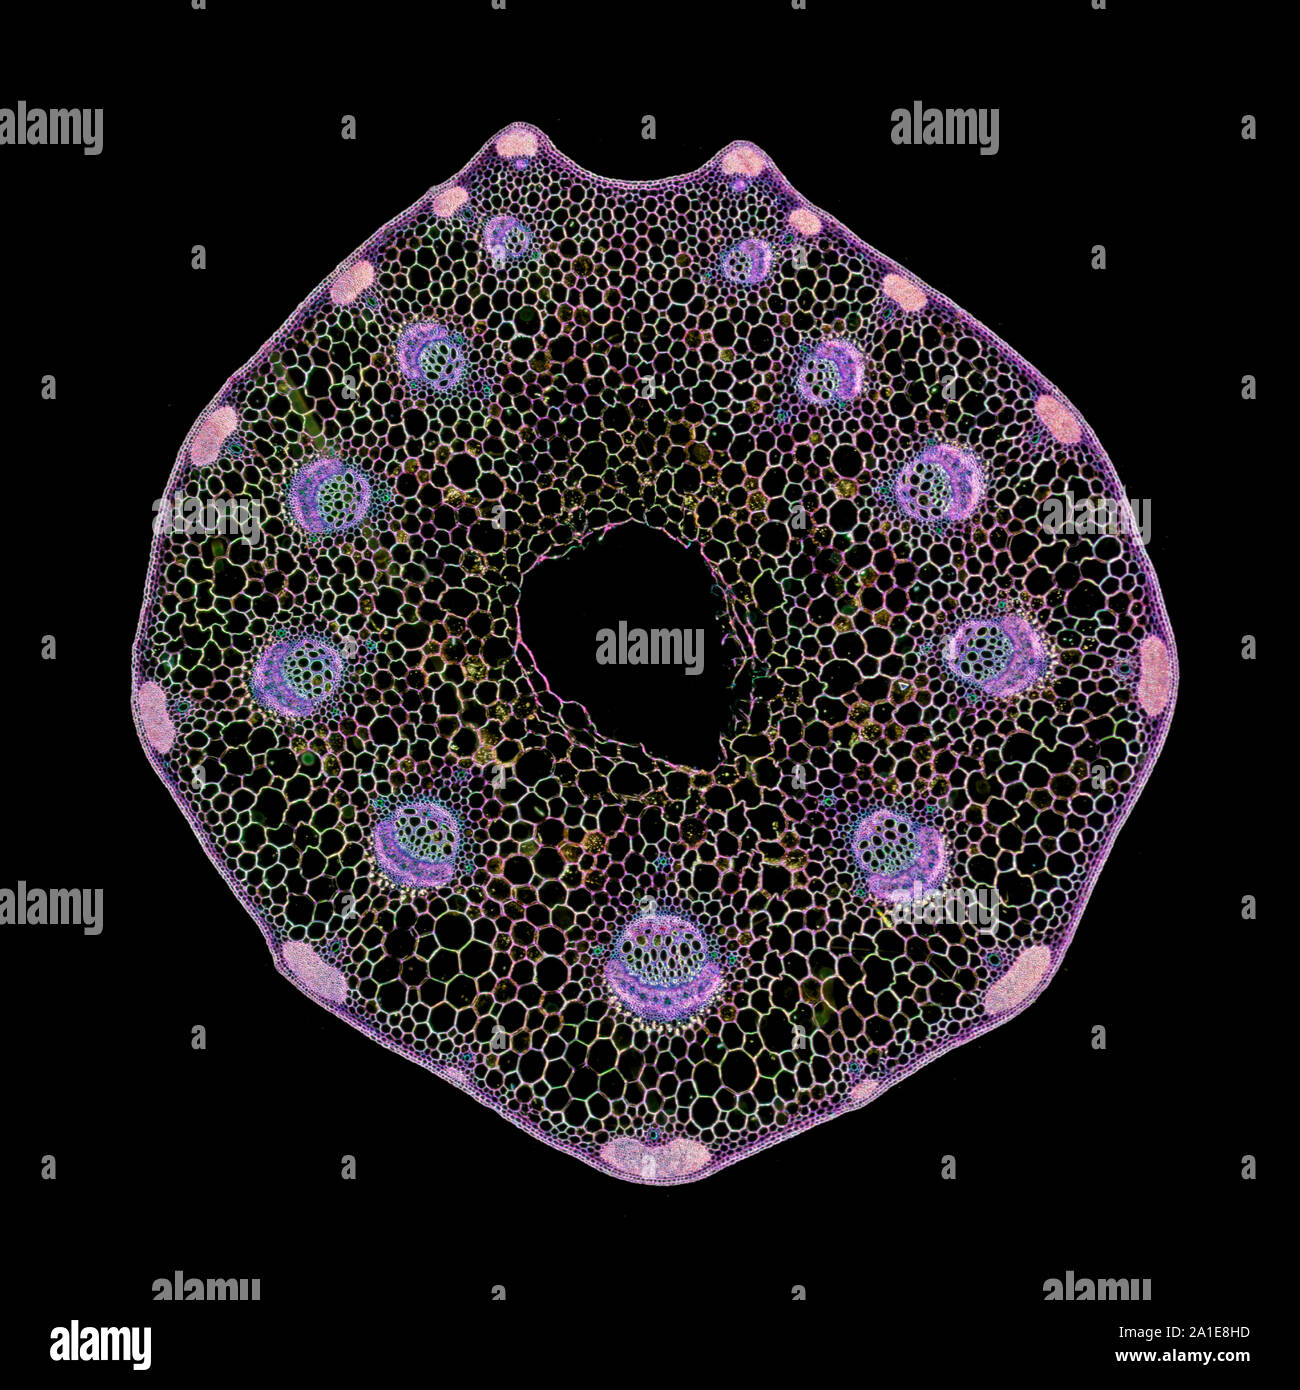 Pflanzliche Stammzellen abschnitt, TS, dunkelfeld Beleuchtung photomicrograph Stockfoto